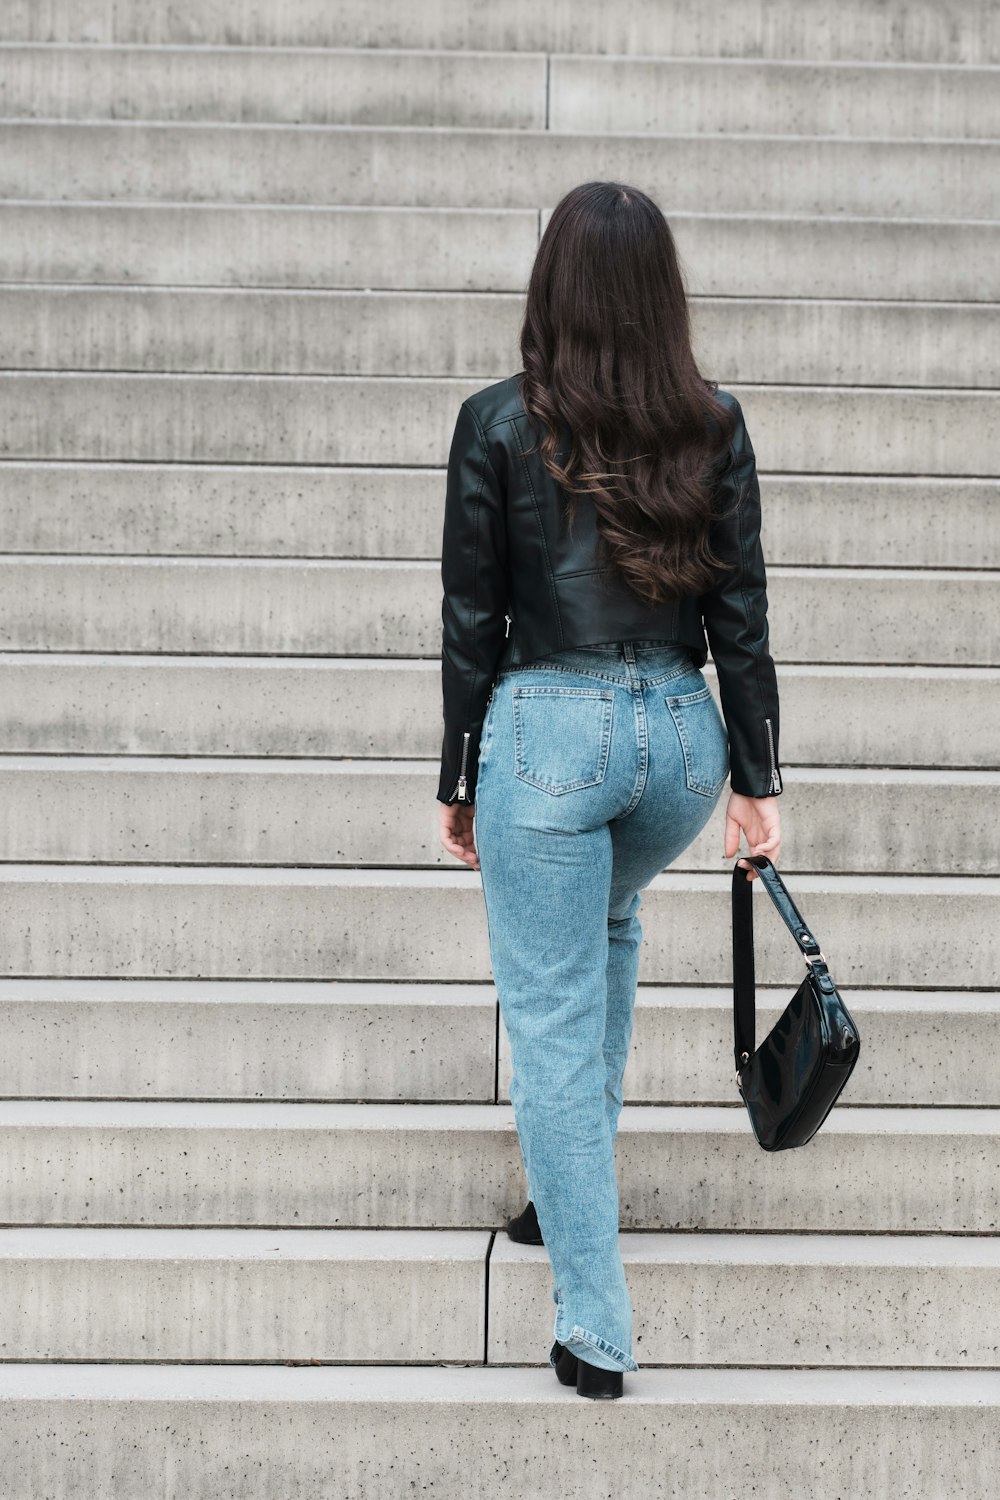 Foto zum Thema Frau in schwarzer Lederjacke und blauer Jeans auf grauer  Betontreppe – Kostenloses Bild zu Stuttgart auf Unsplash